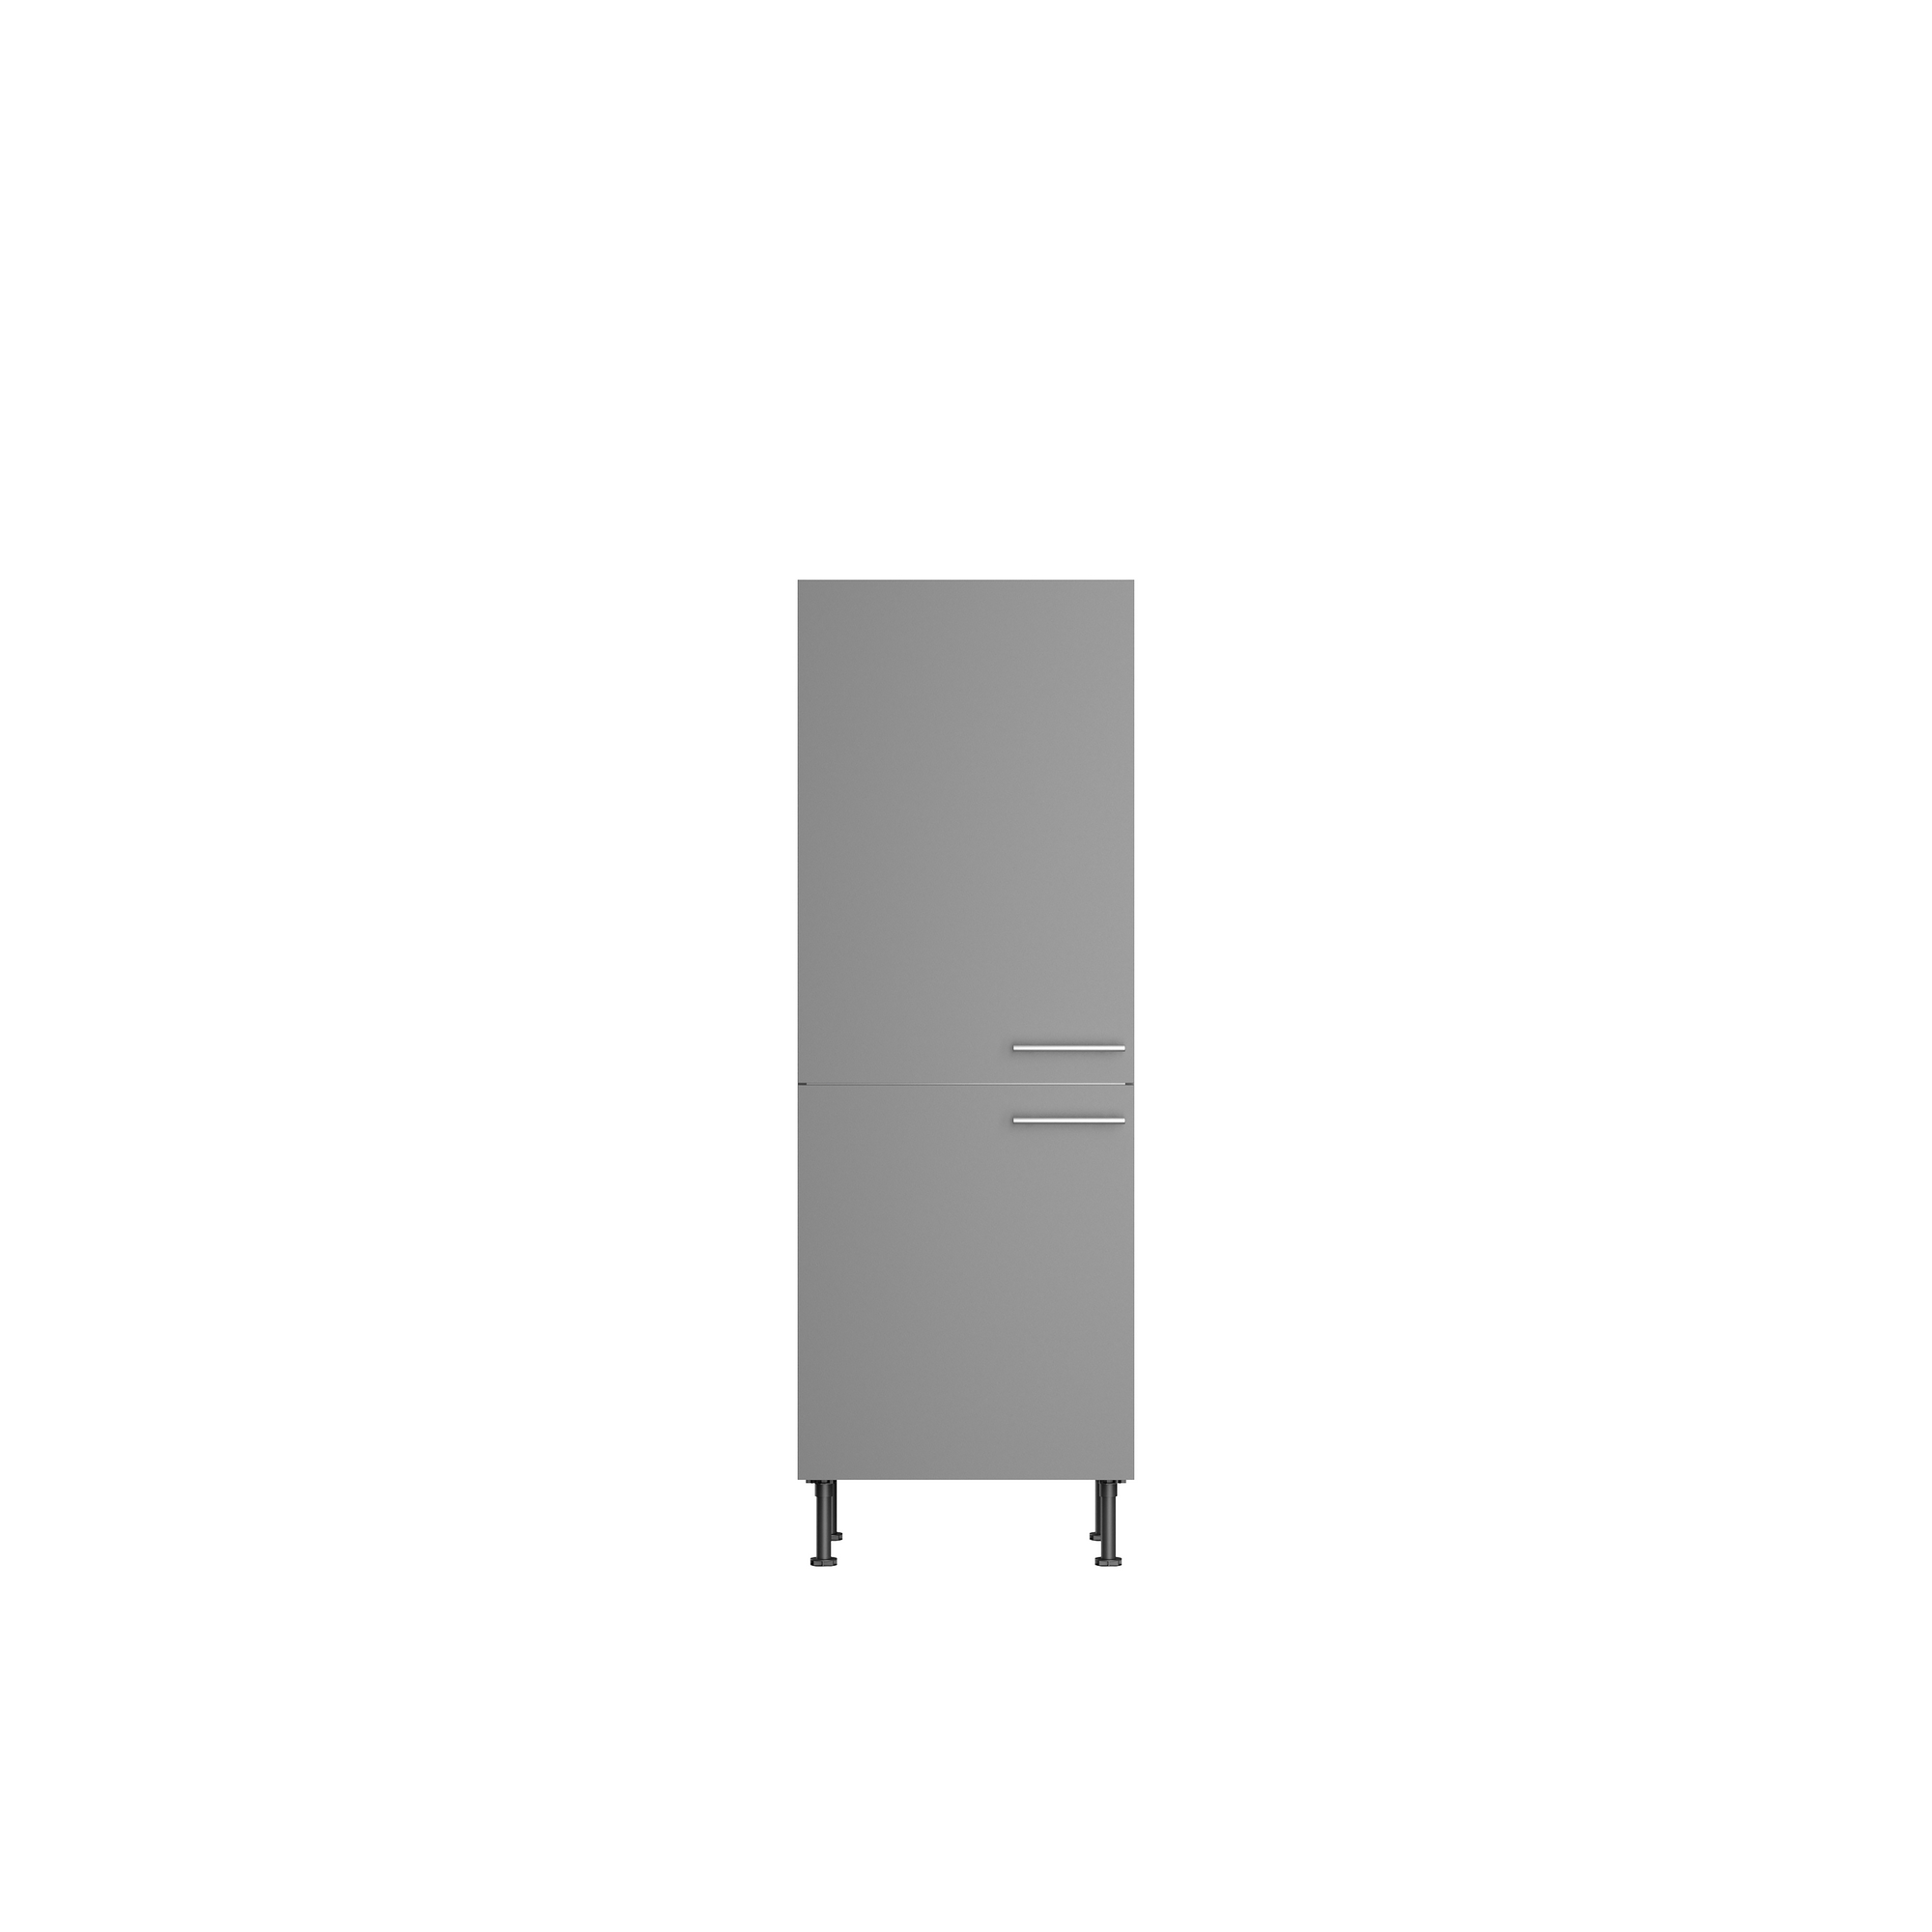 Midischrank für Einbaukühlschrank 'Optikomfort Mats825' grau 60 x 176,6 x 58,4 cm + product picture